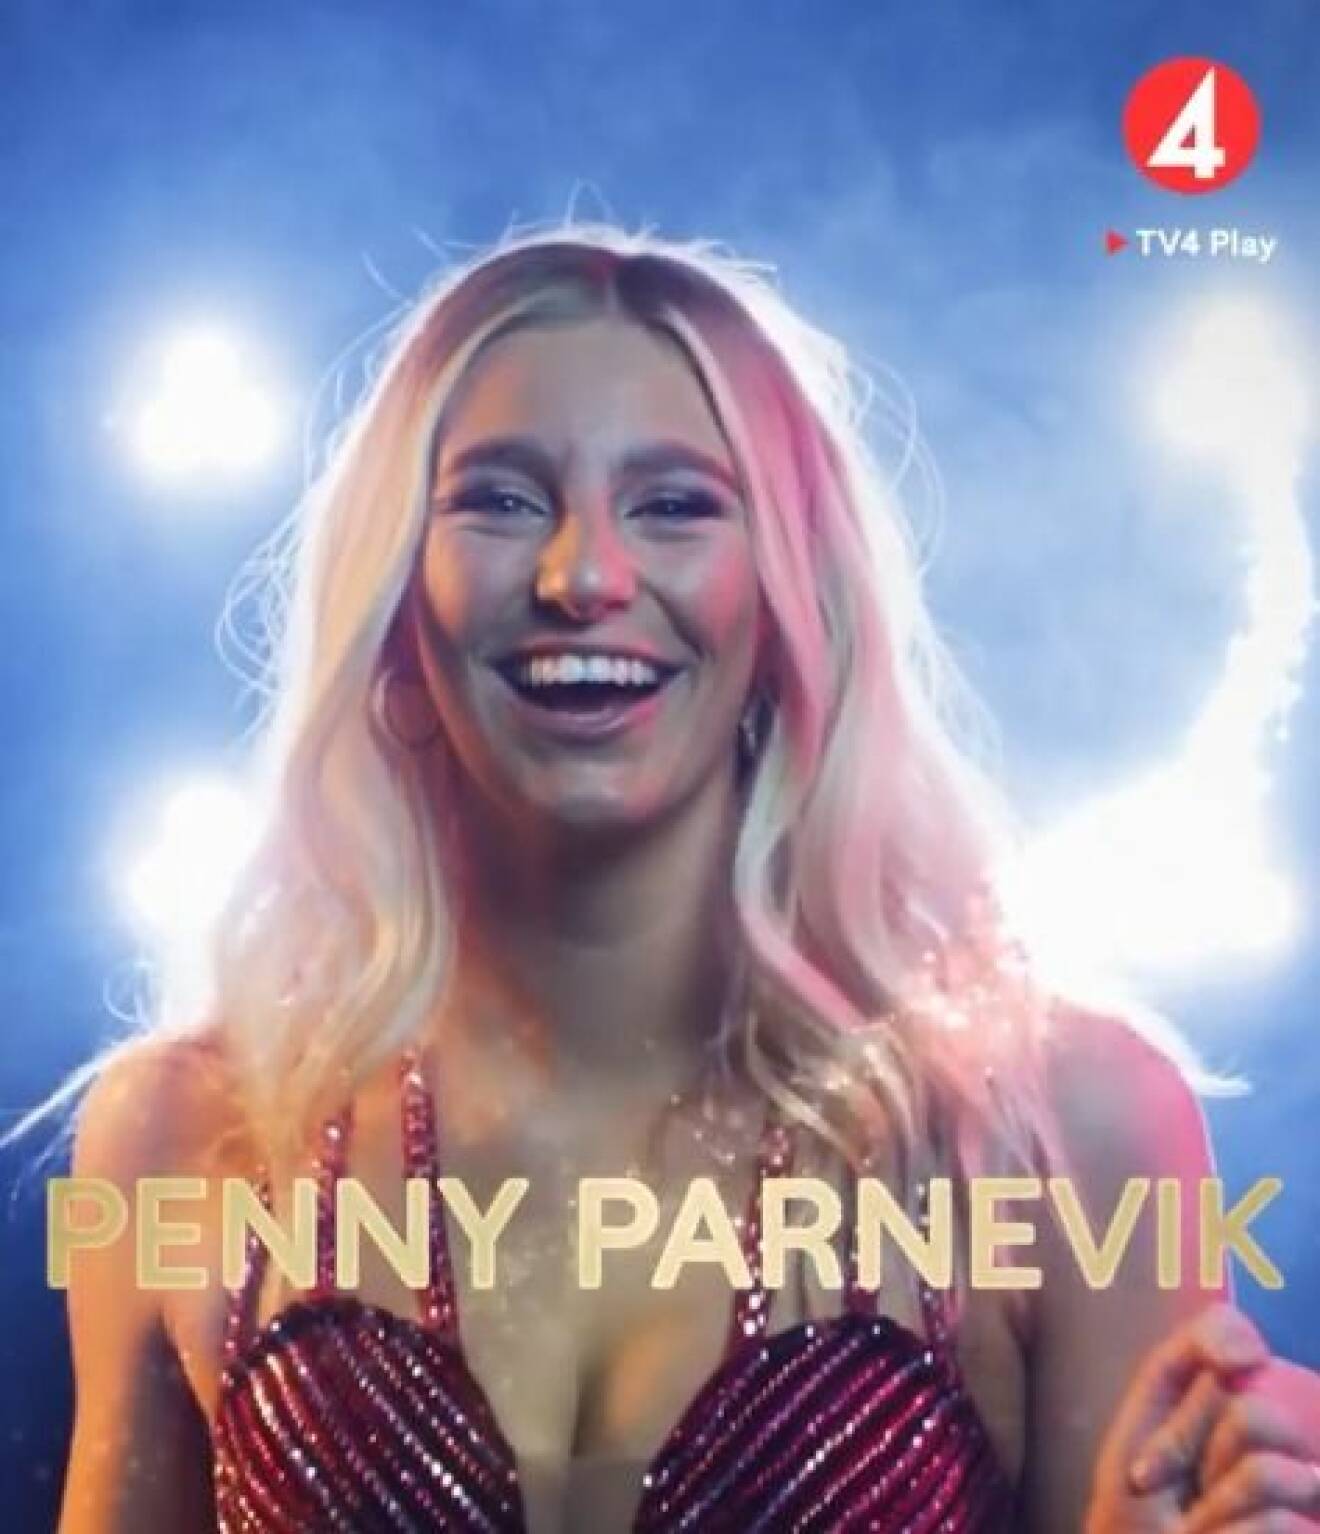 Penny Parnevik är en av deltagarna i Let's dance 2020